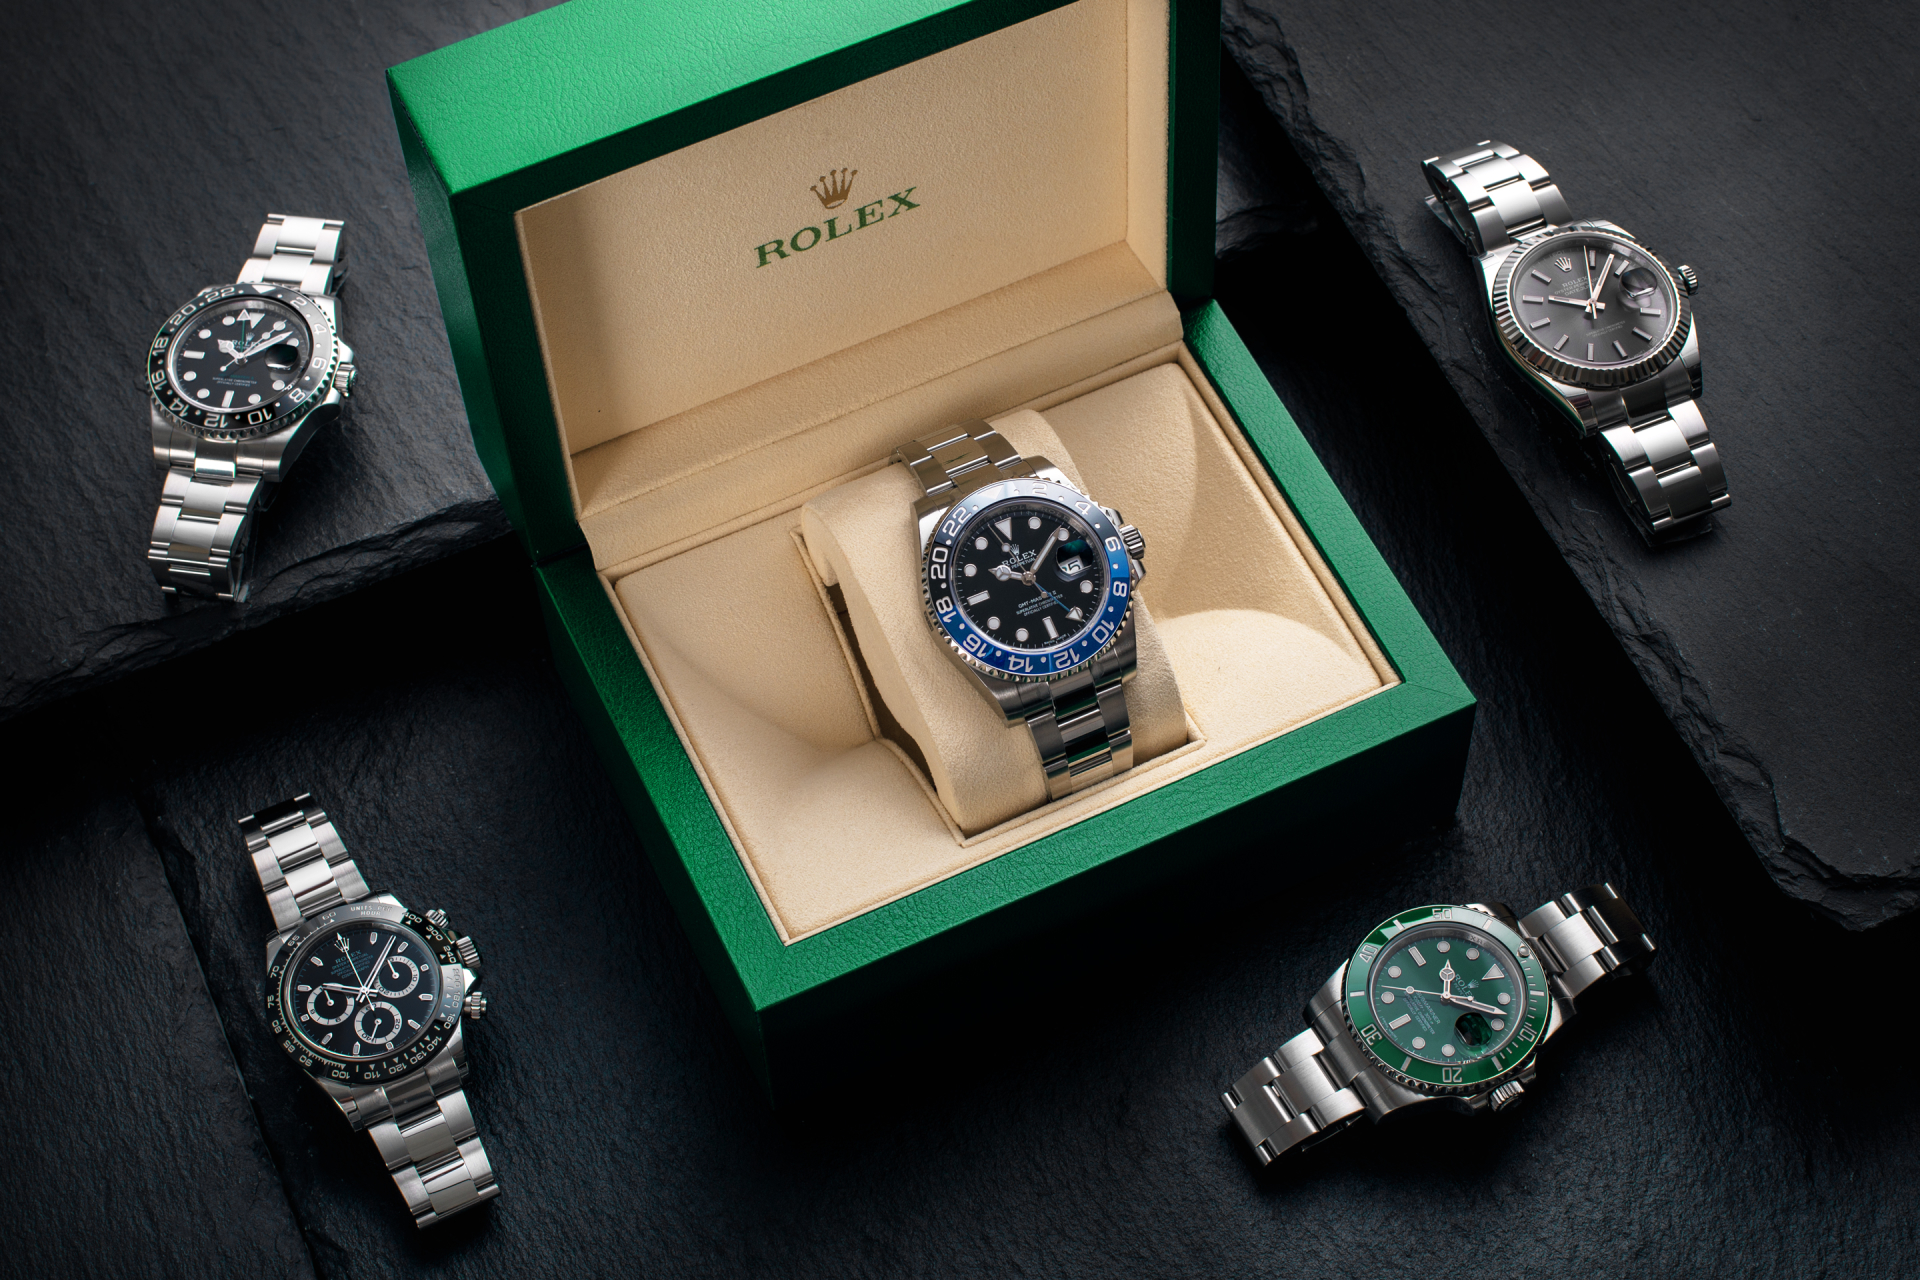 Cách định giá đồng hồ Rolex chính xác nhất qua 6 yếu tố mà bất kì người đam mê đồng hồ nào cũng phải biết